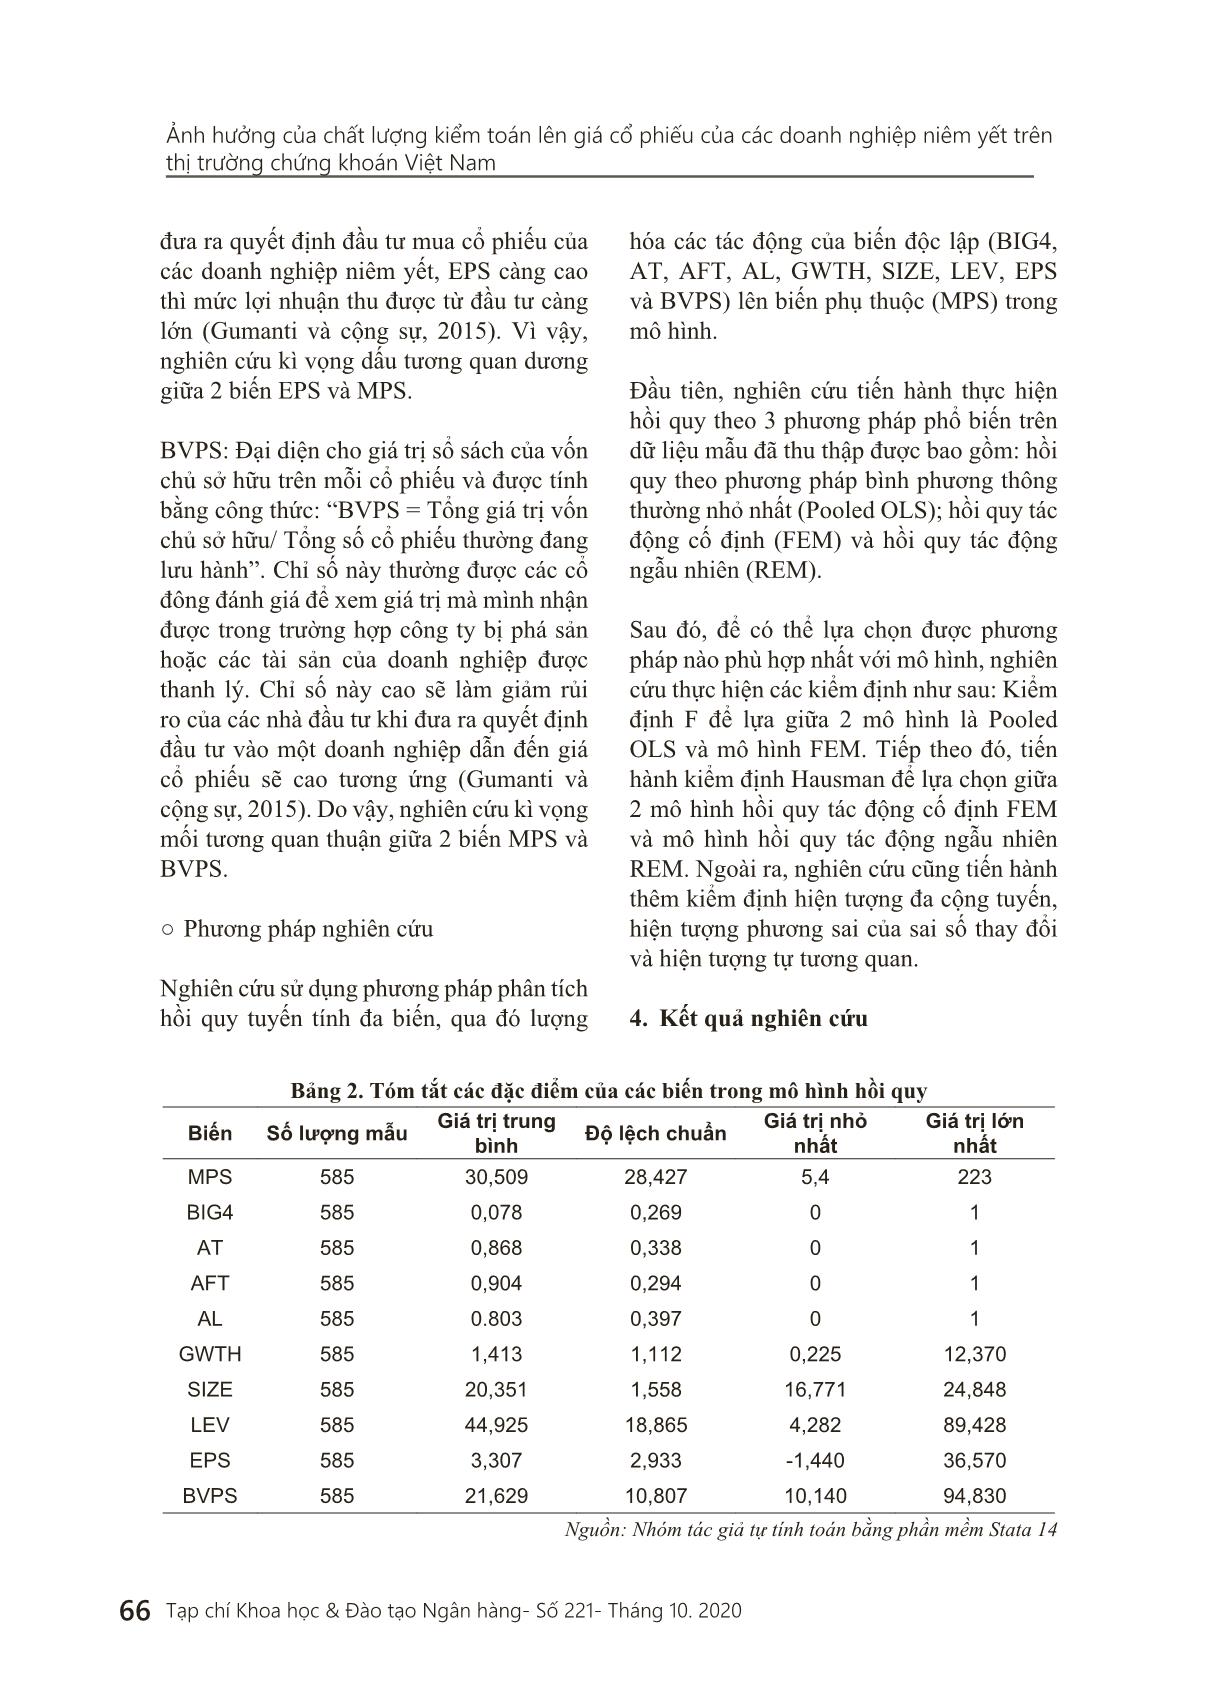 Ảnh hưởng của chất lượng kiểm toán lên giá cổ phiếu của các doanh nghiệp niêm yết trên thị trường chứng khoán Việt Nam trang 8